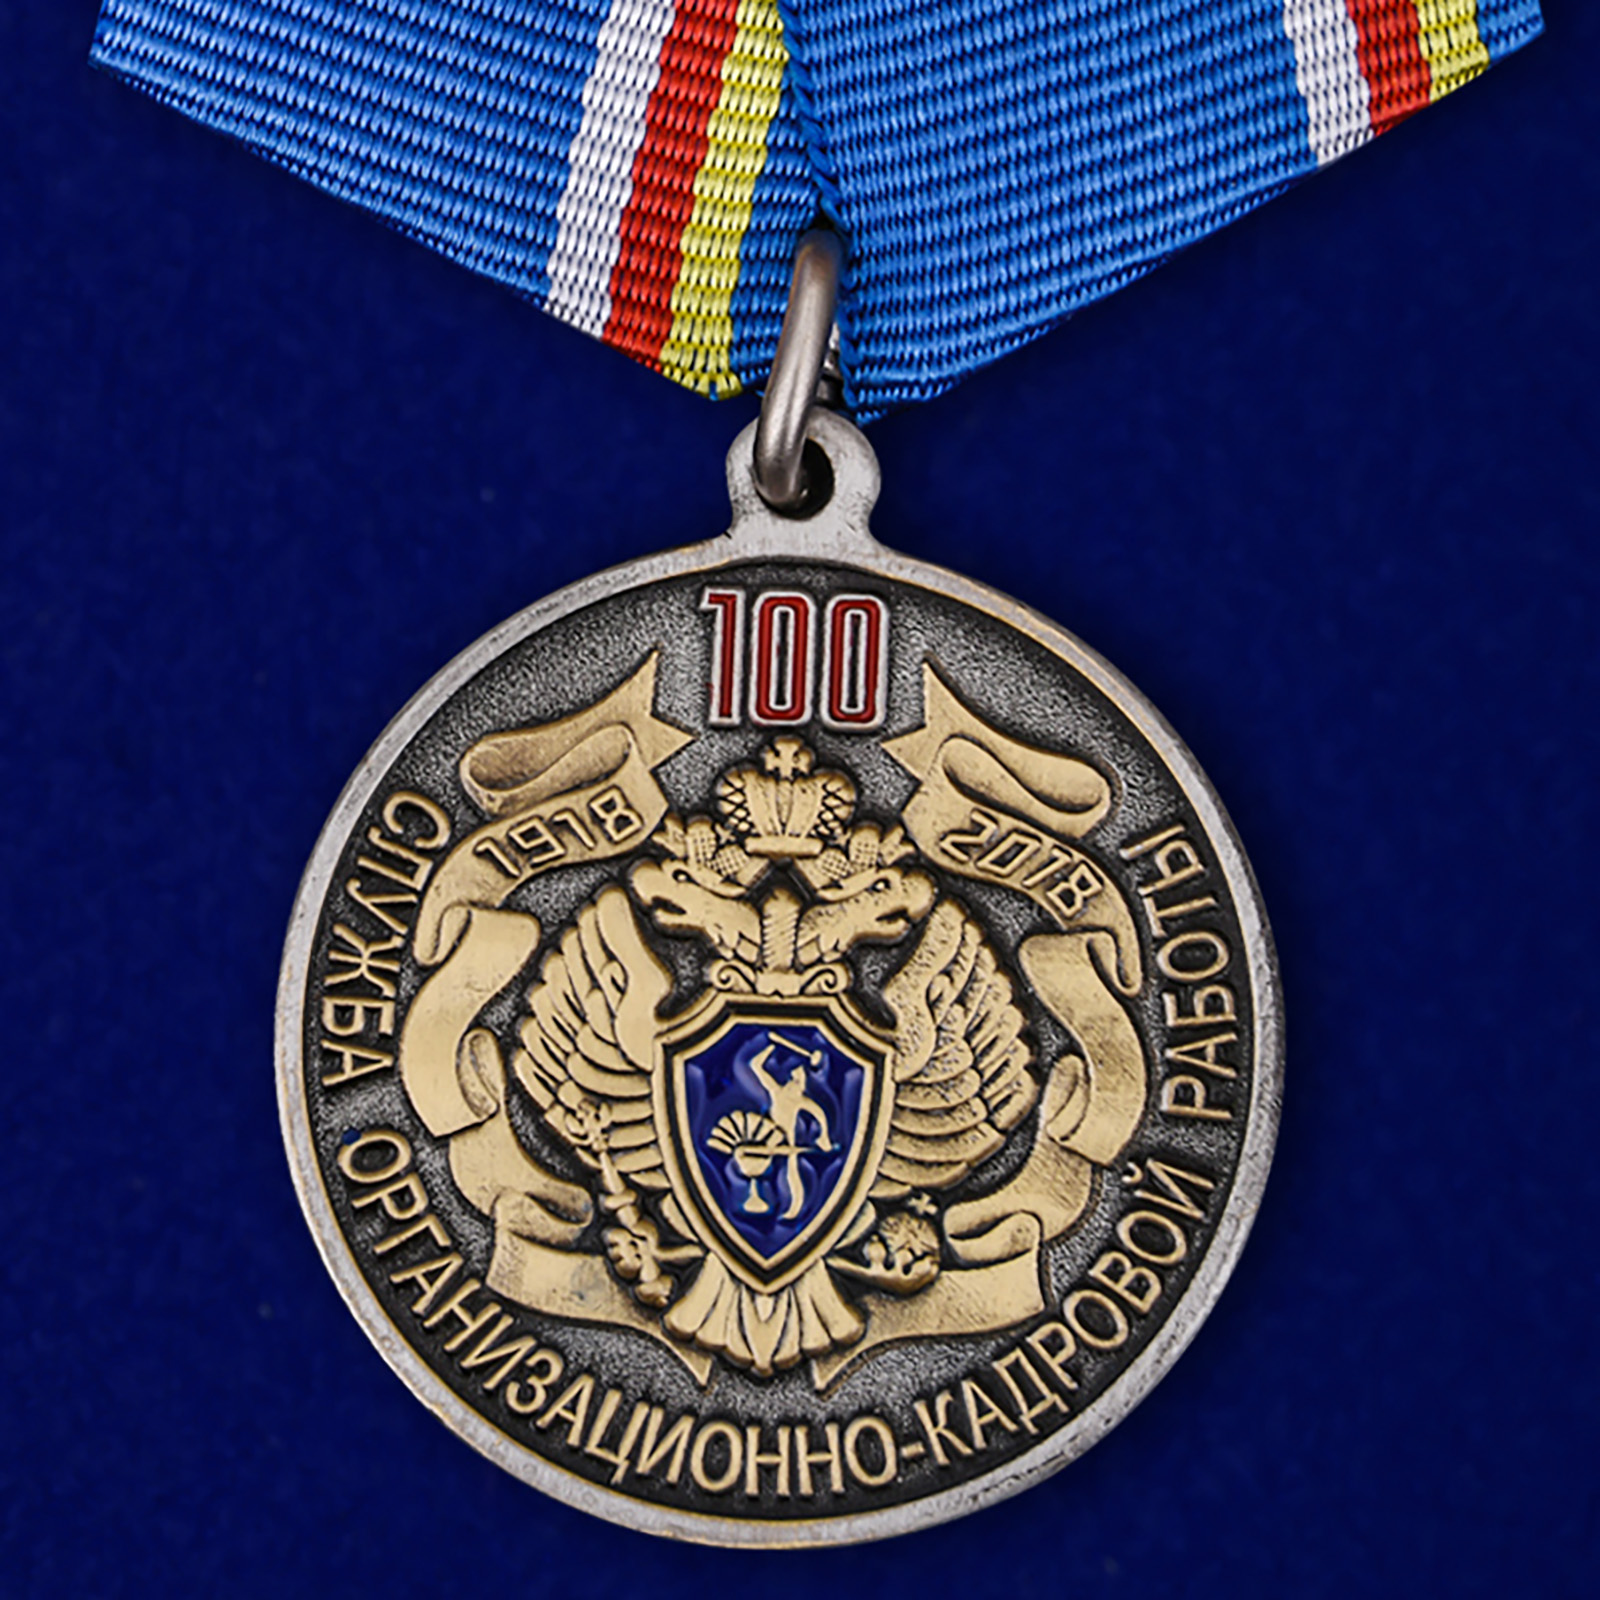 Купить медаль 100 лет Службе организационно-кадровой работы ФСБ России на подставке выгодно